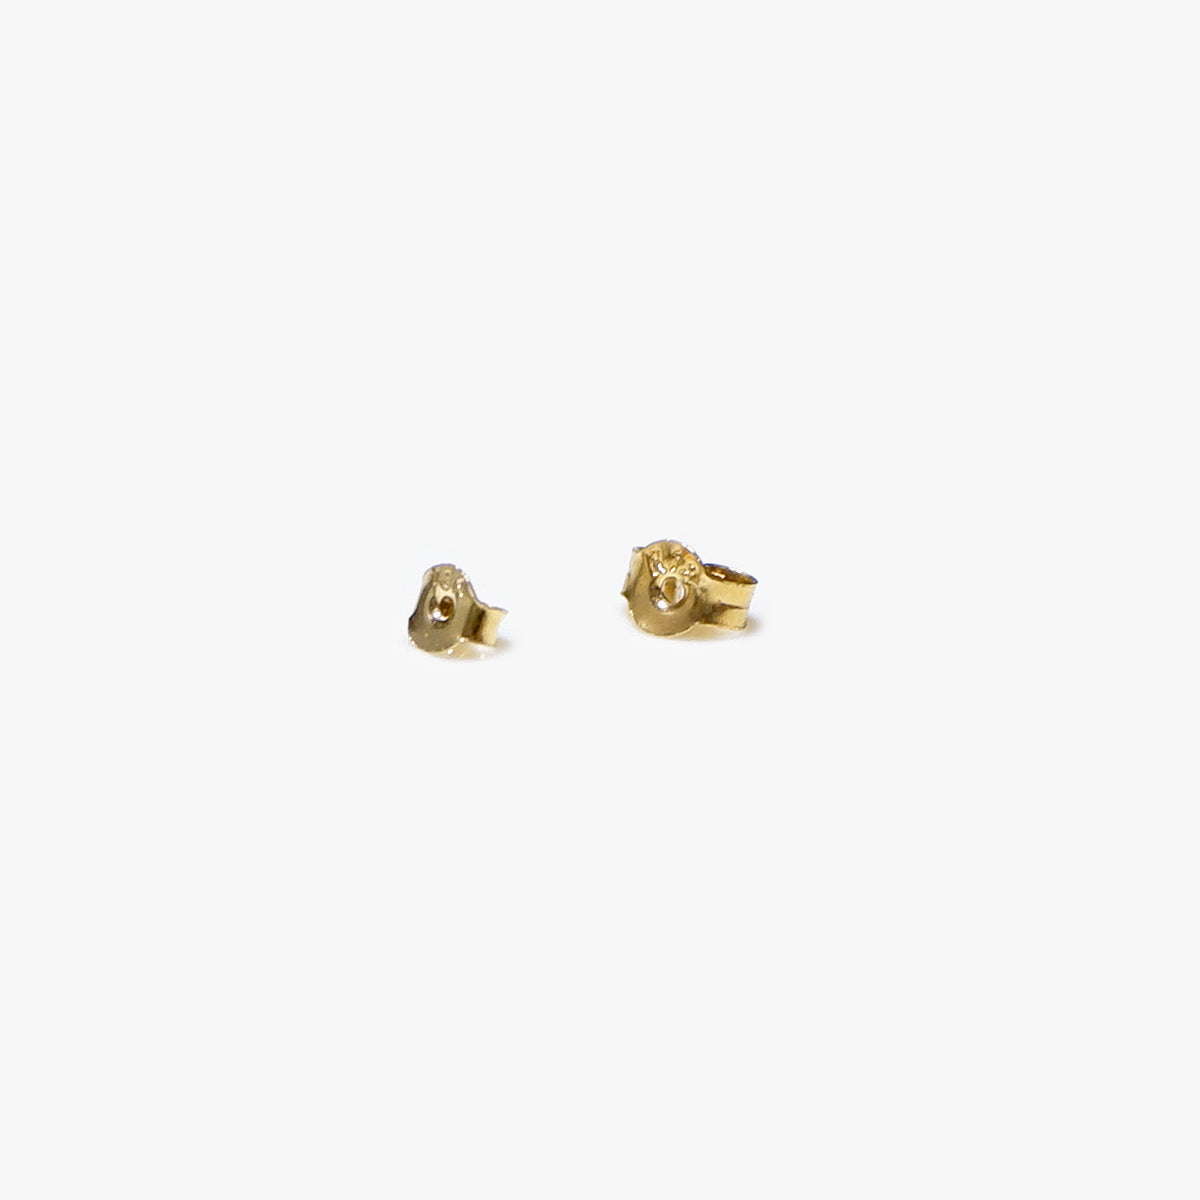 Earring Locks in Solid Gold